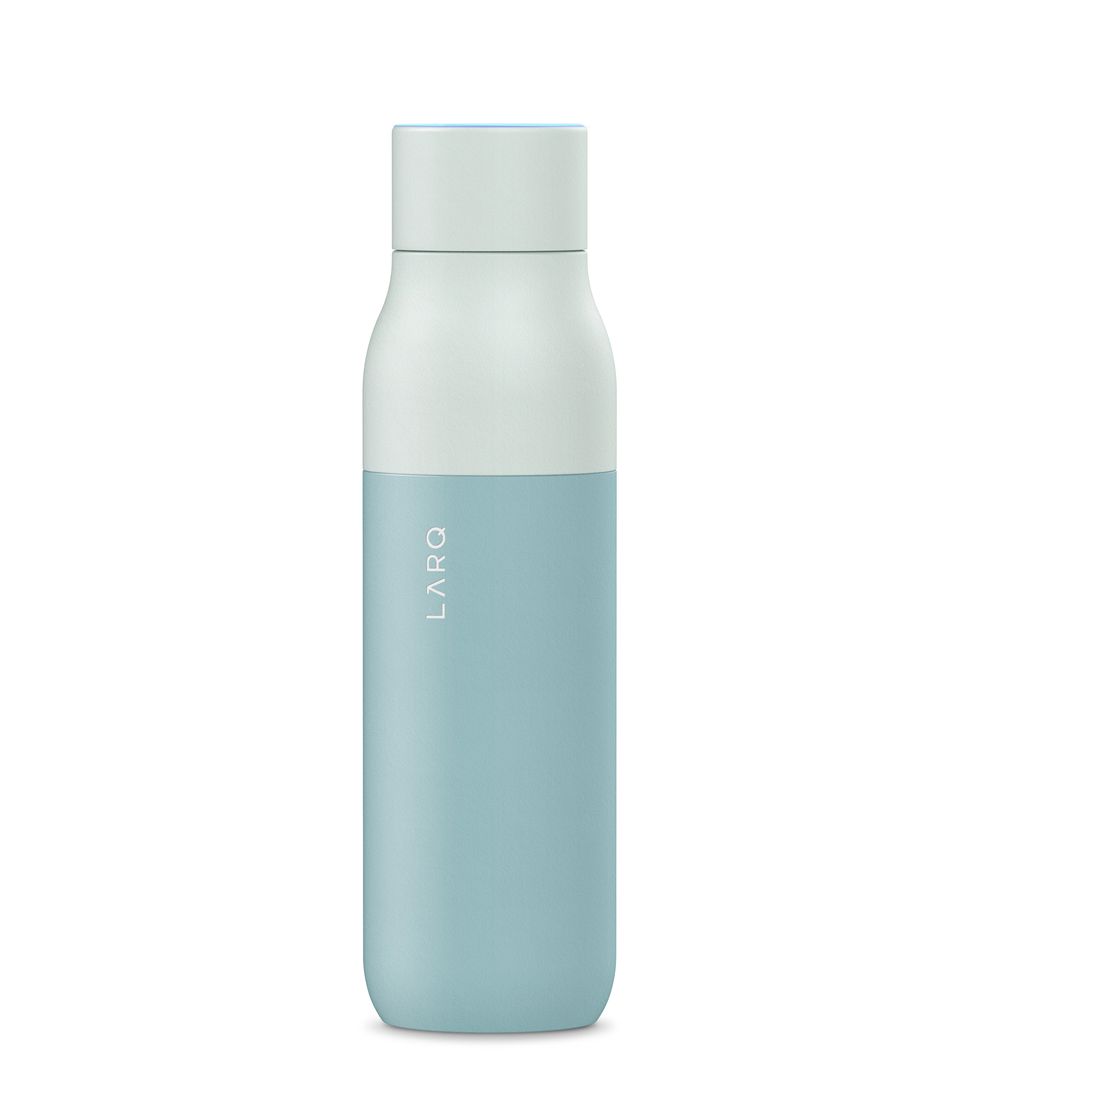 LARQ Bottle PureVis Water Bottle 500ml/17oz Seaside Mint